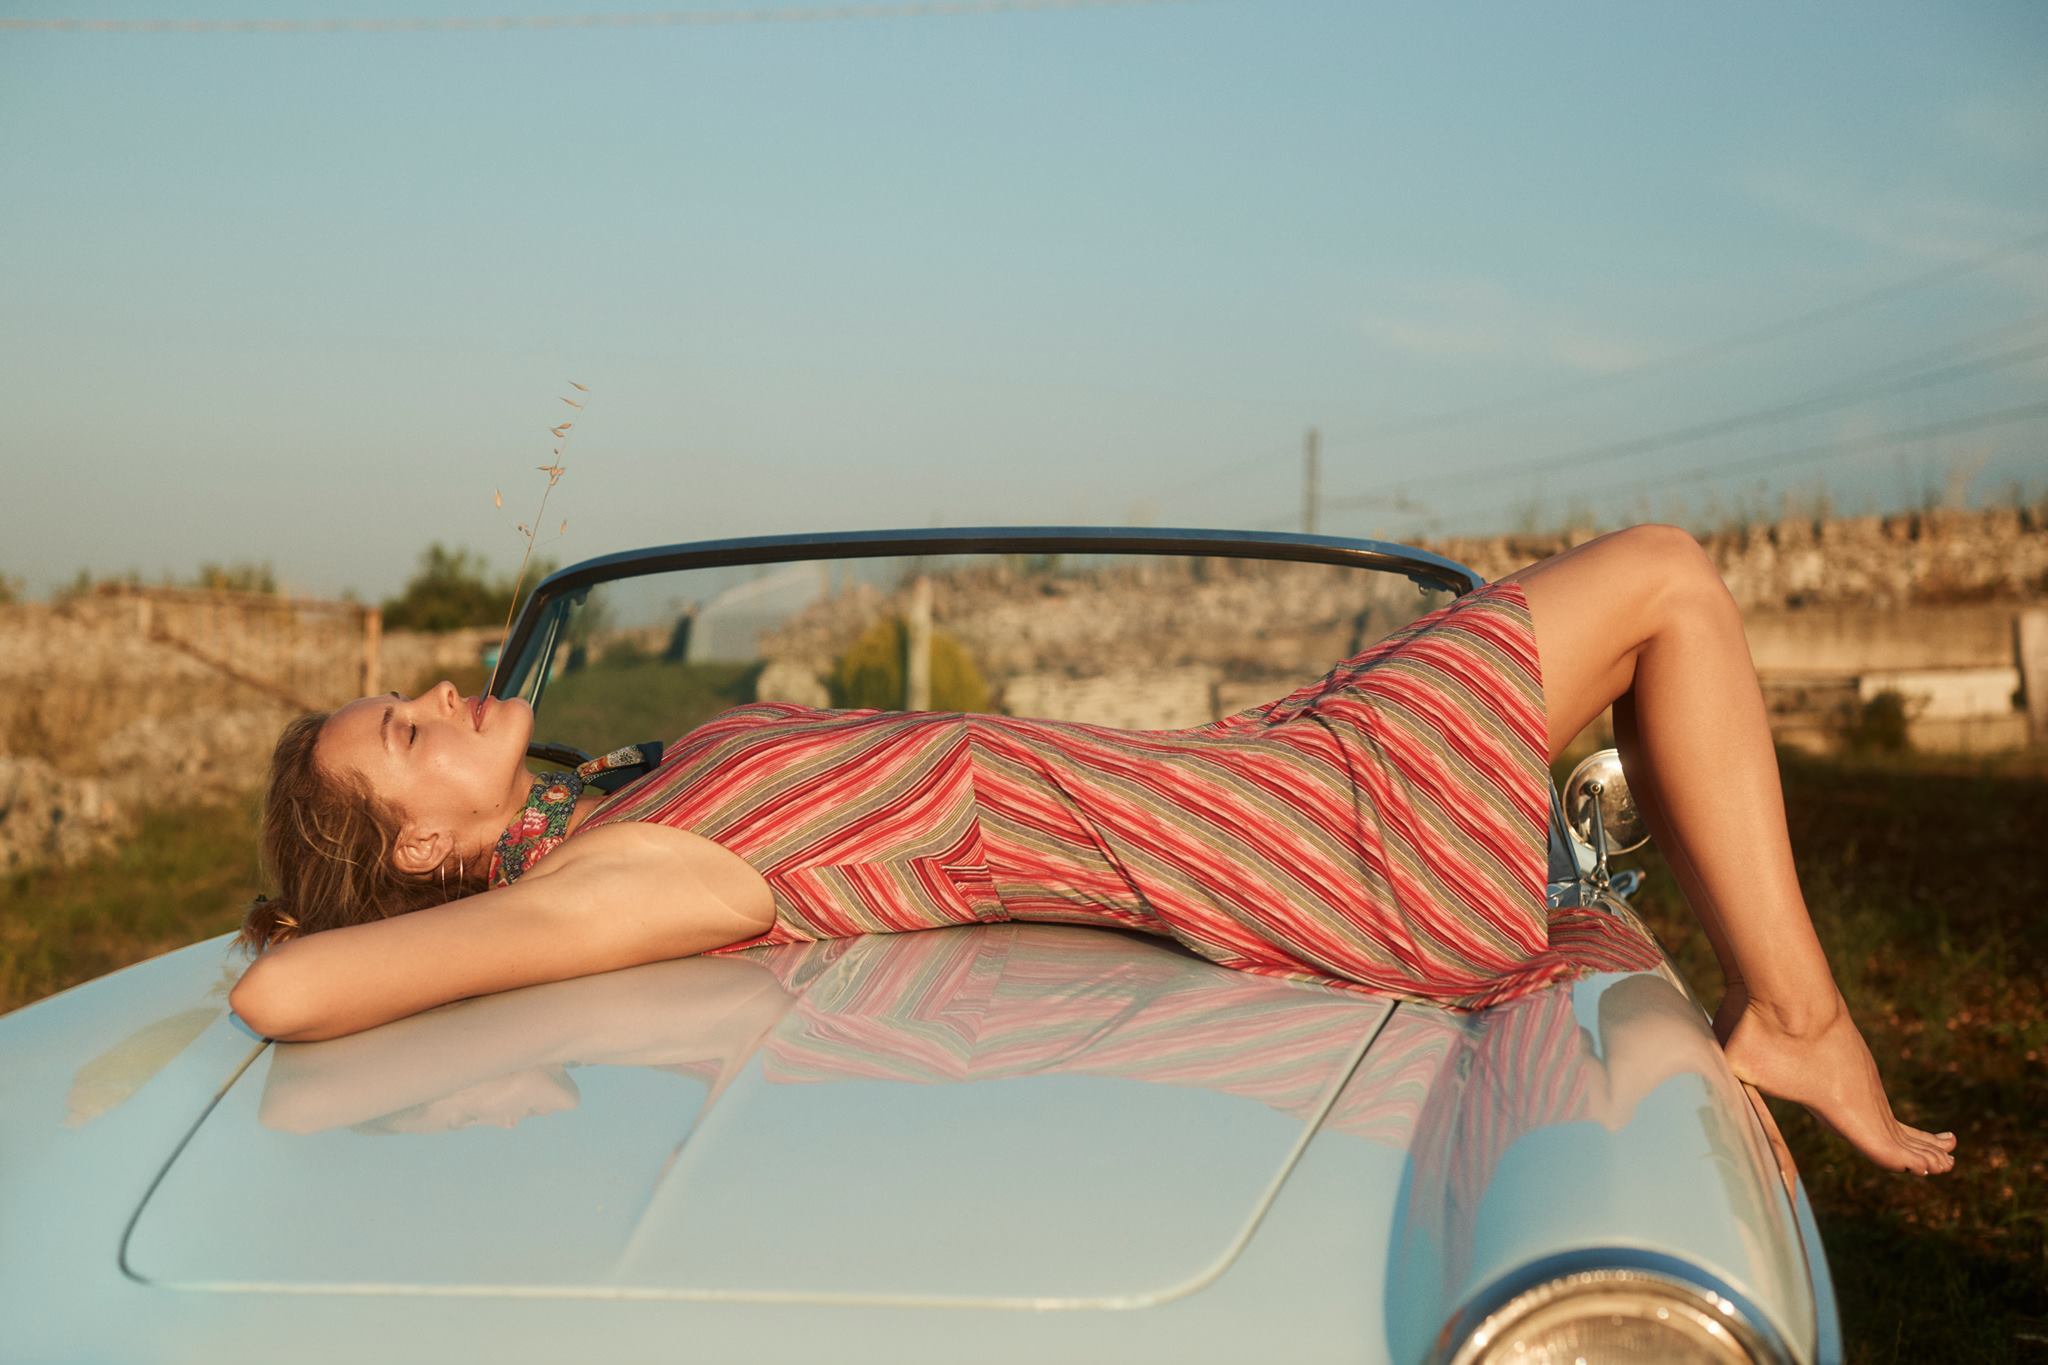 Баба на капоте. Девушка лежит на машине. Лежит на капоте. Девушка лежит на капоте. Девушка на капоте автомобиля.